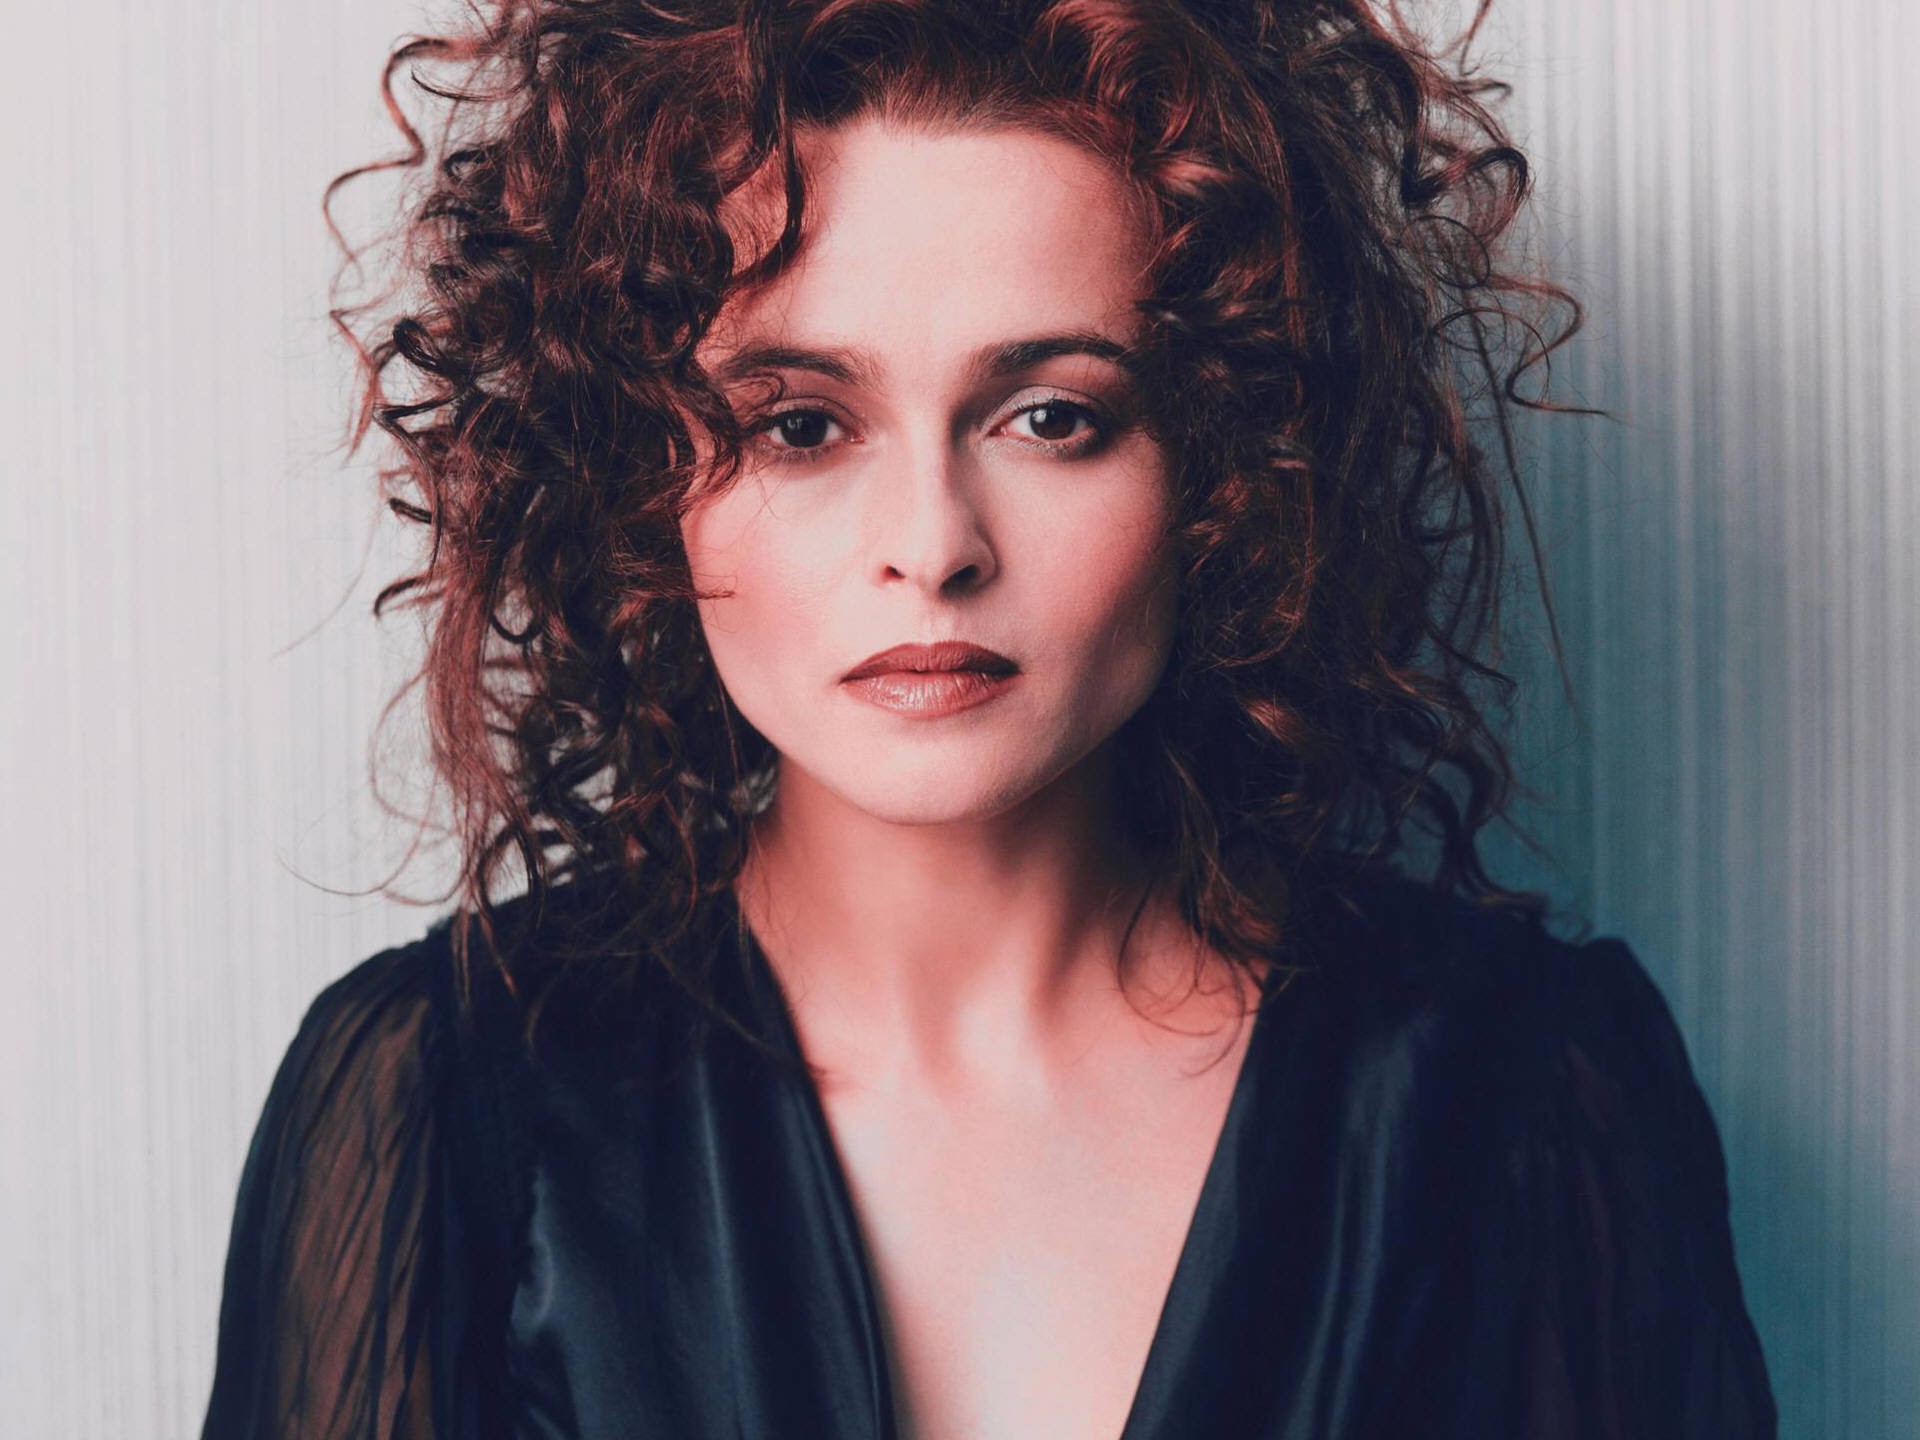 Descarga gratuita de fondo de pantalla para móvil de Celebridades, Helena Bonham Carter.